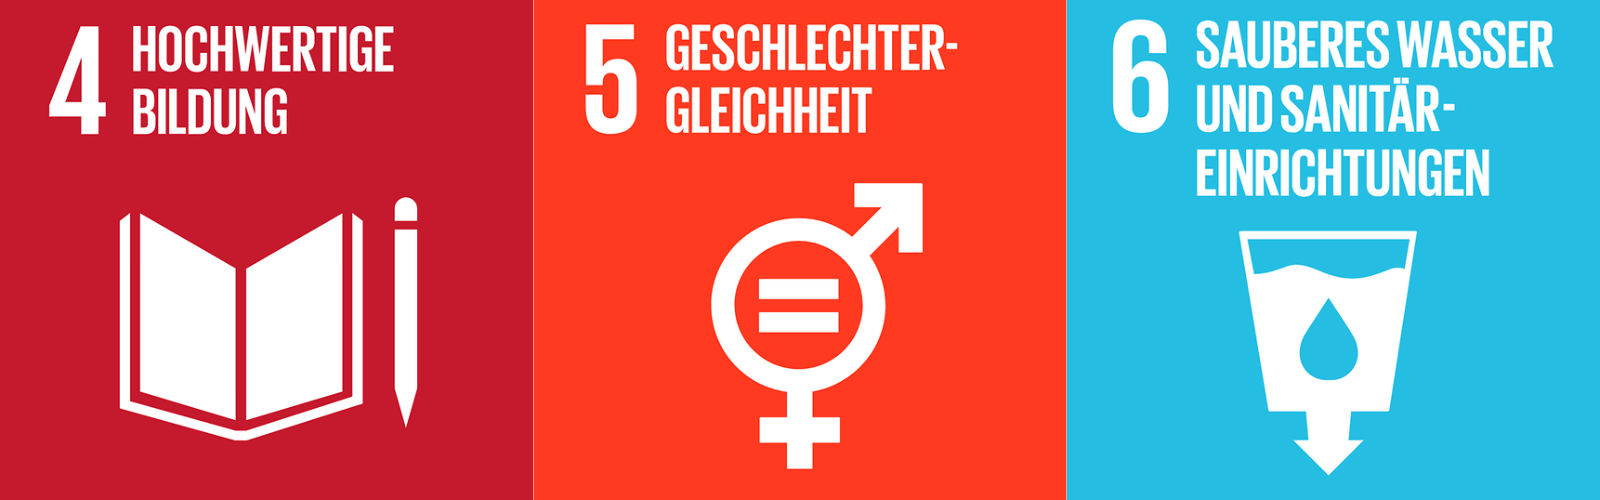 SDG 4: Hochwertige Bildung, SDG 5: Geschlechtergleichheit, SDG 6: Sauberes Wasser und Sanitär­einrichtungen